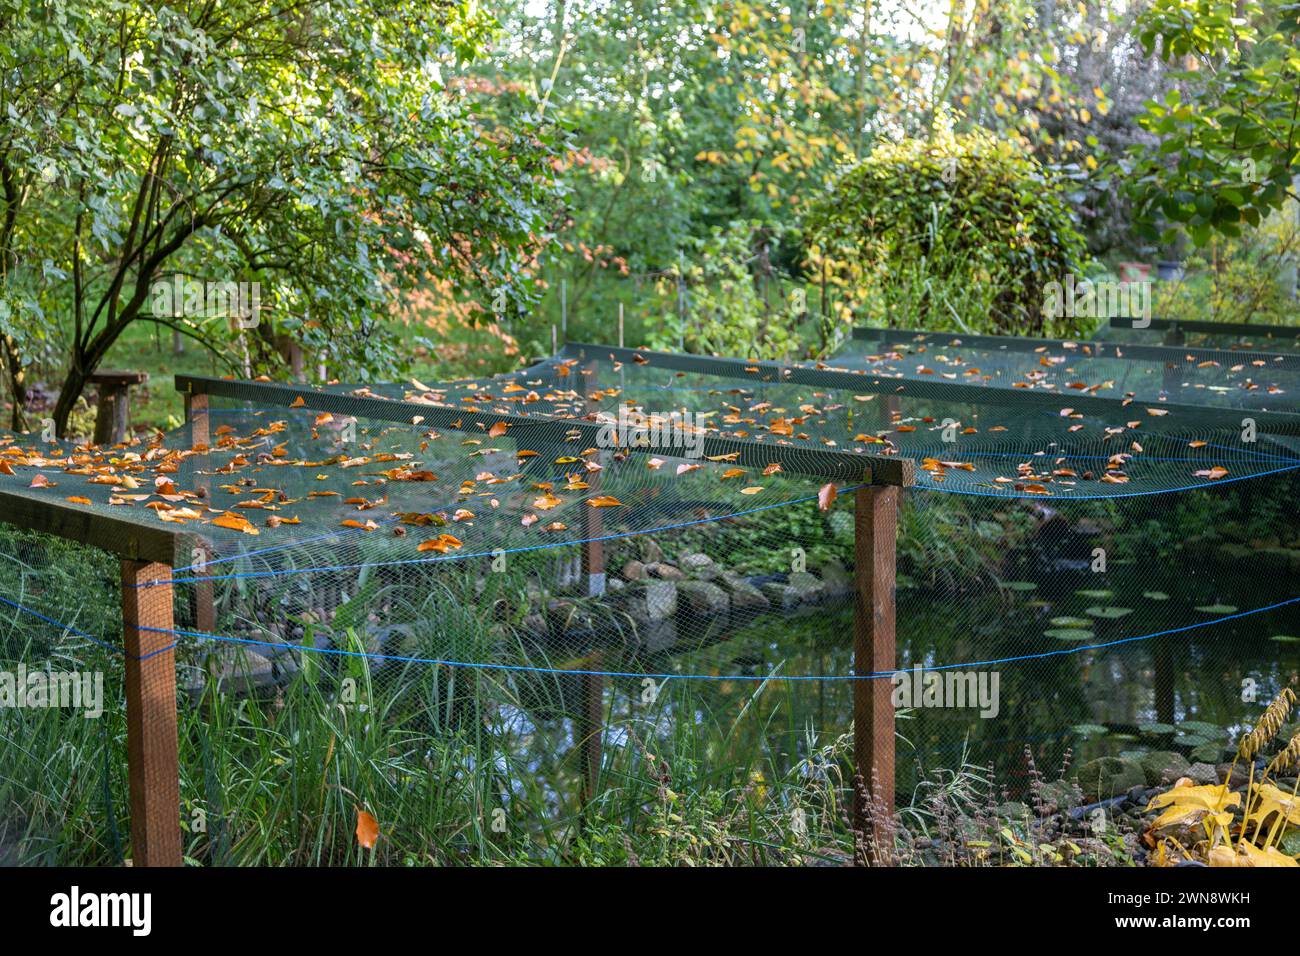 Netz über einen Teich gespannt. Schutz vor Vögeln und Laub Foto Stock